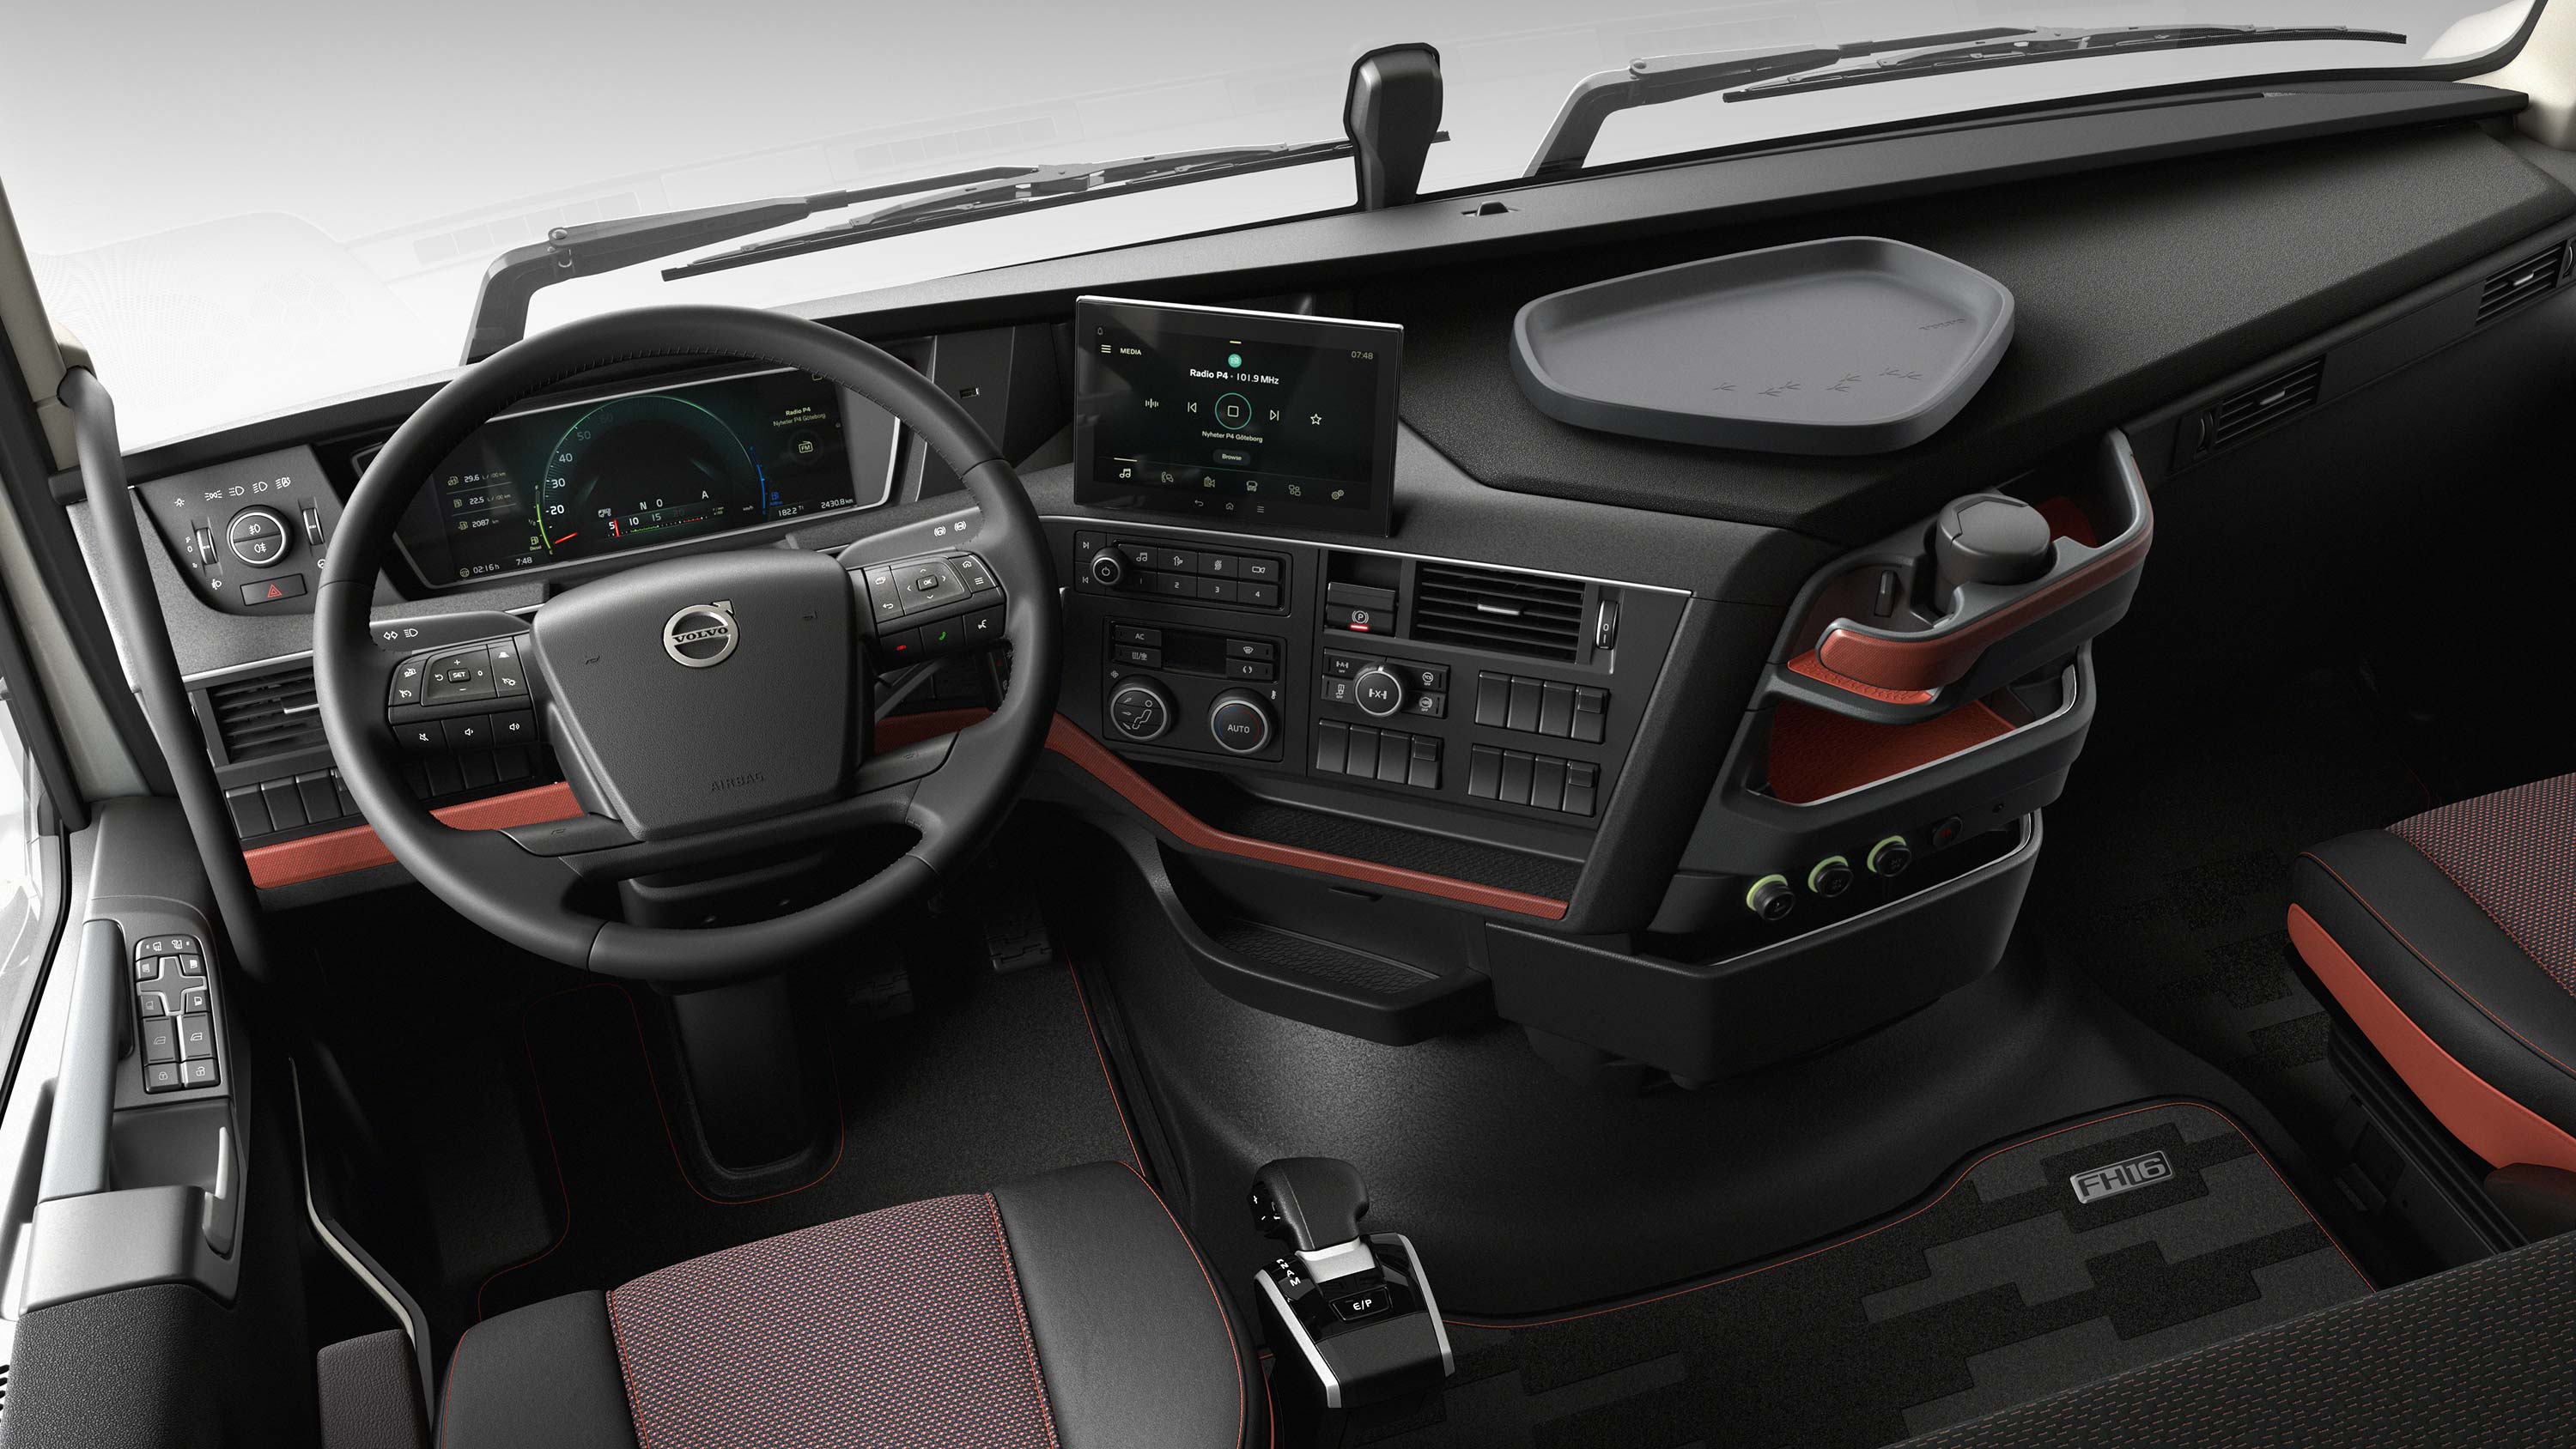 Interfejs za vozača kamiona Volvo FH16 omogućava vozaču kontrolu sa lakoćom.